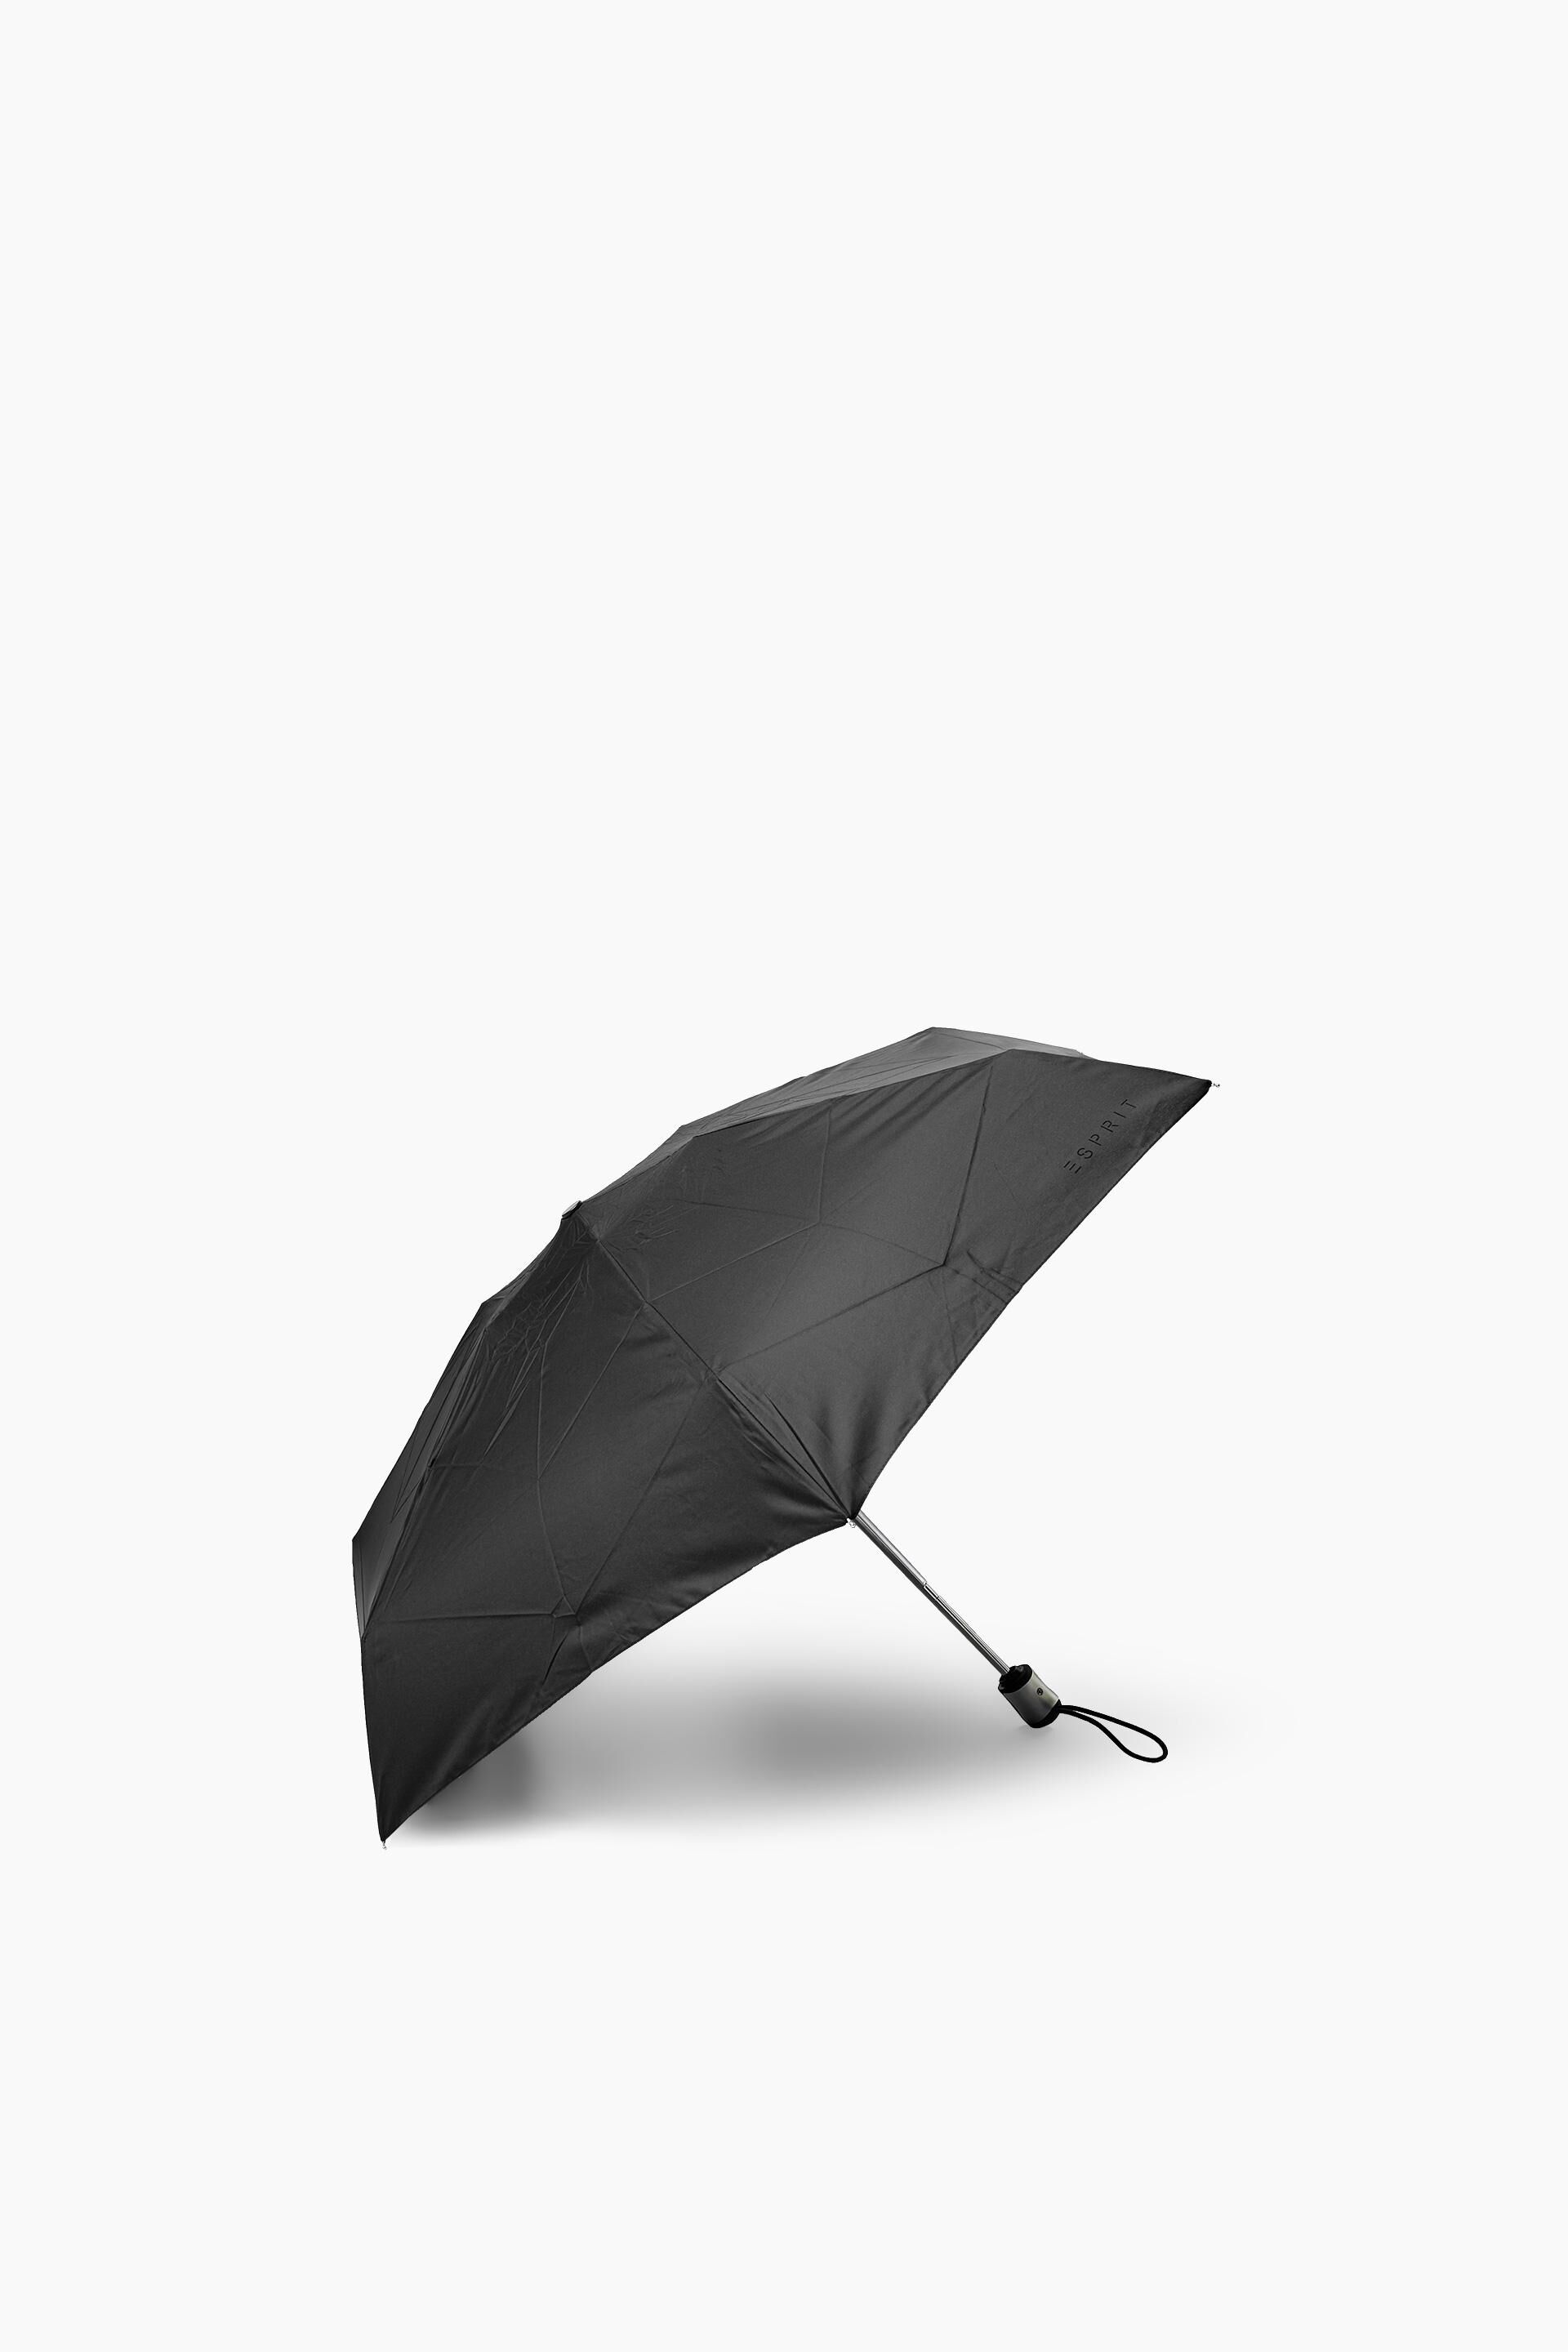 ESPRITEsprit Marca Parapluie Pliant Femme Ouverture & Fermeture automatiques Easymatic 4-Sec Taille 22 cm 